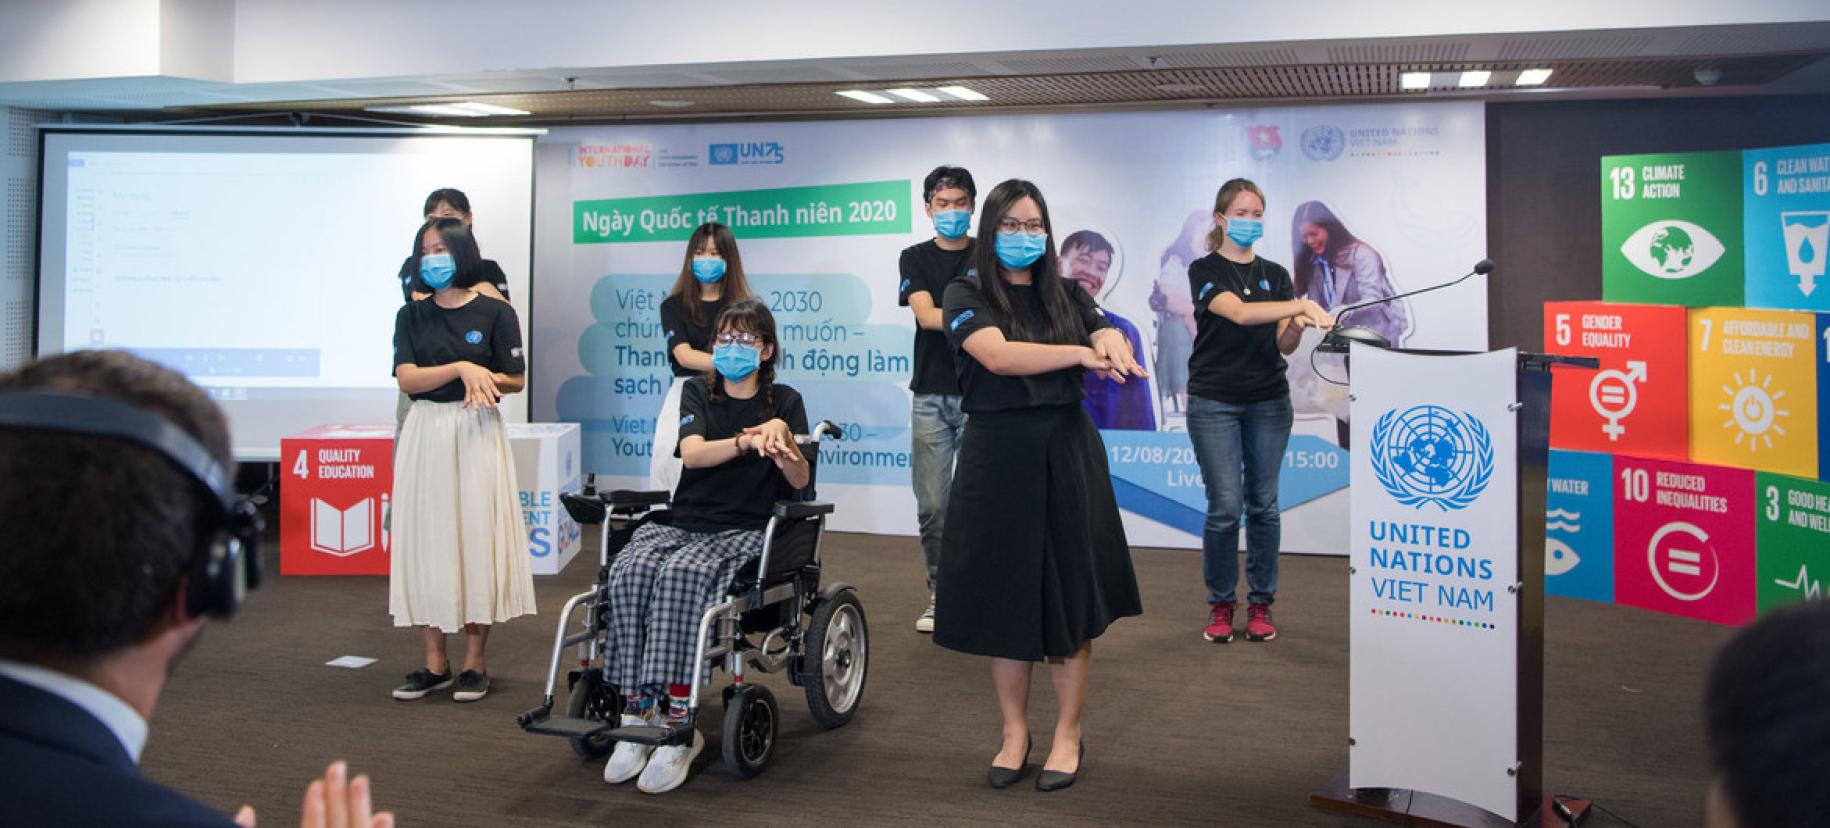 De jeunes filles et de jeunes garçons exécutent une chorégraphie lors des festivités organisées pour la Journée internationale de la jeunesse 2020. L'une des participantes, au centre de l'image, est en fauteuil roulant. Tous portent un masque de protection respiratoire.